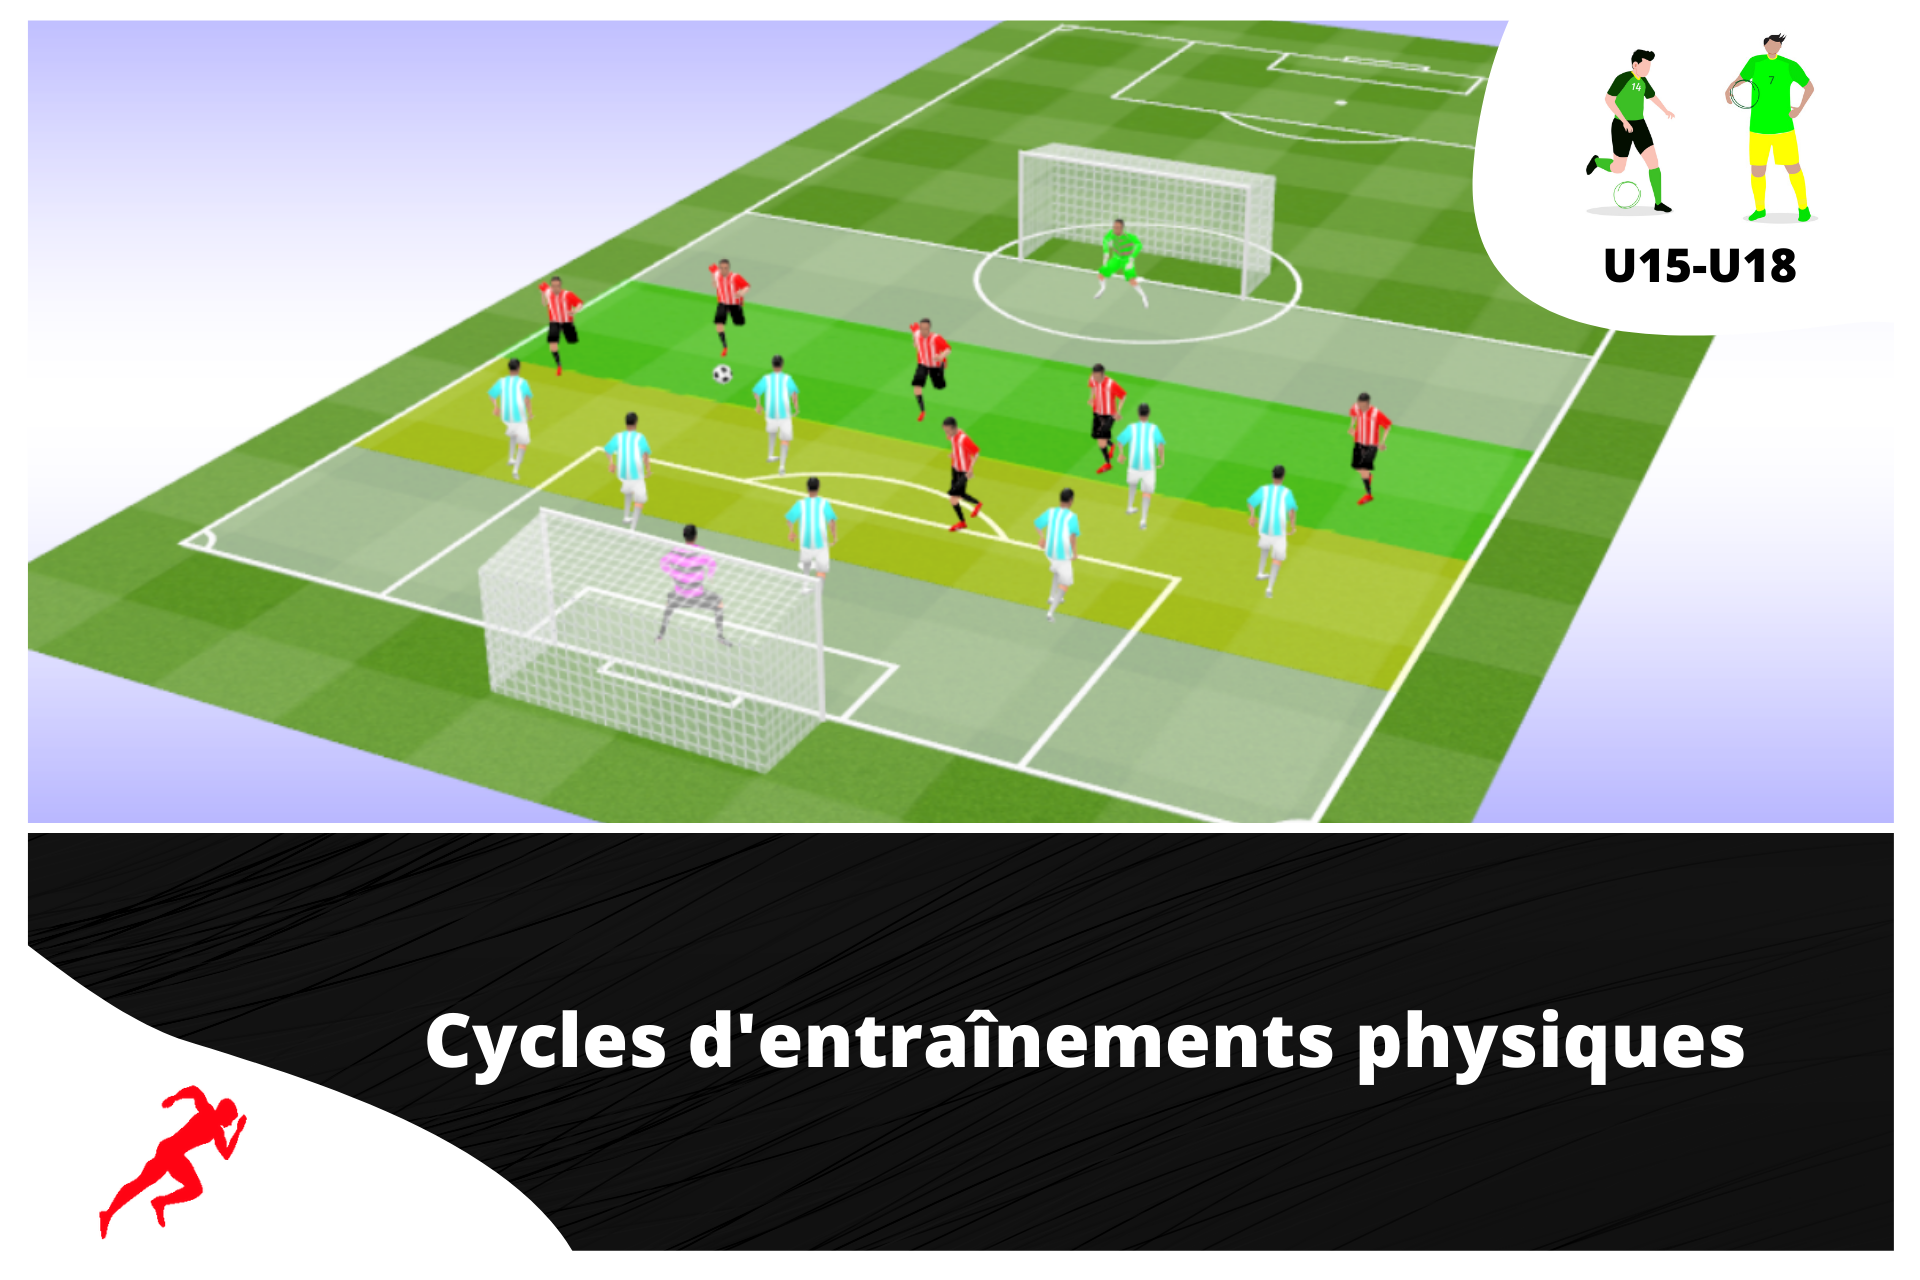 Un cycle de 4 semaines spécial "périodisation tactique"U15-U18 - preparationphysiquefootball-shop.com